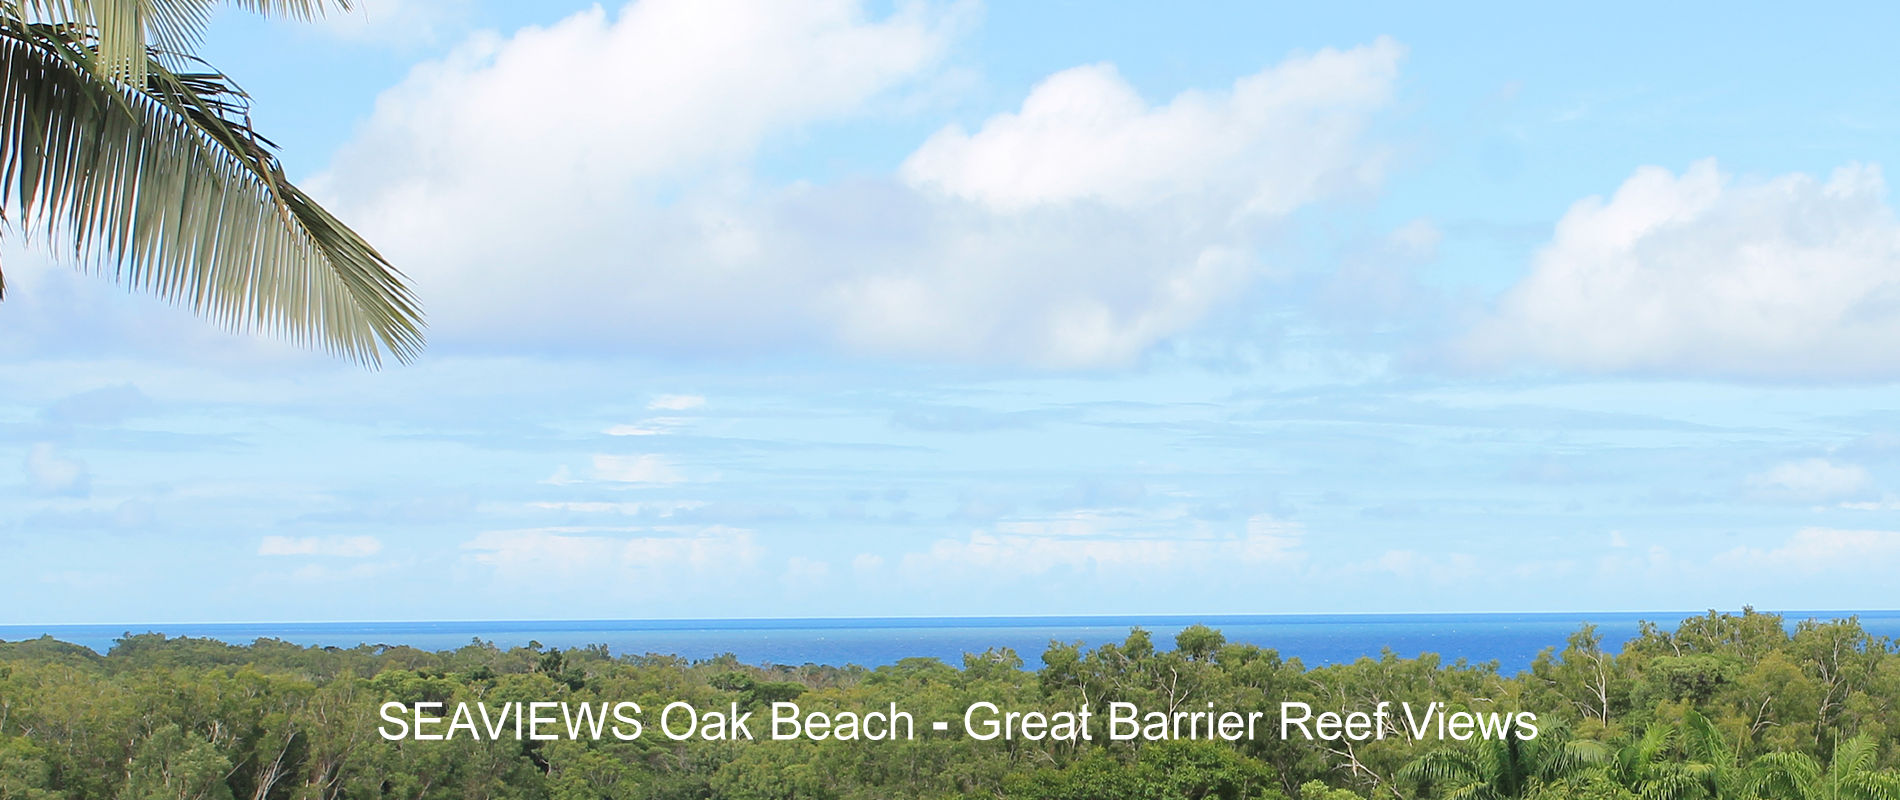 Oak Beach accommodation Air BnB